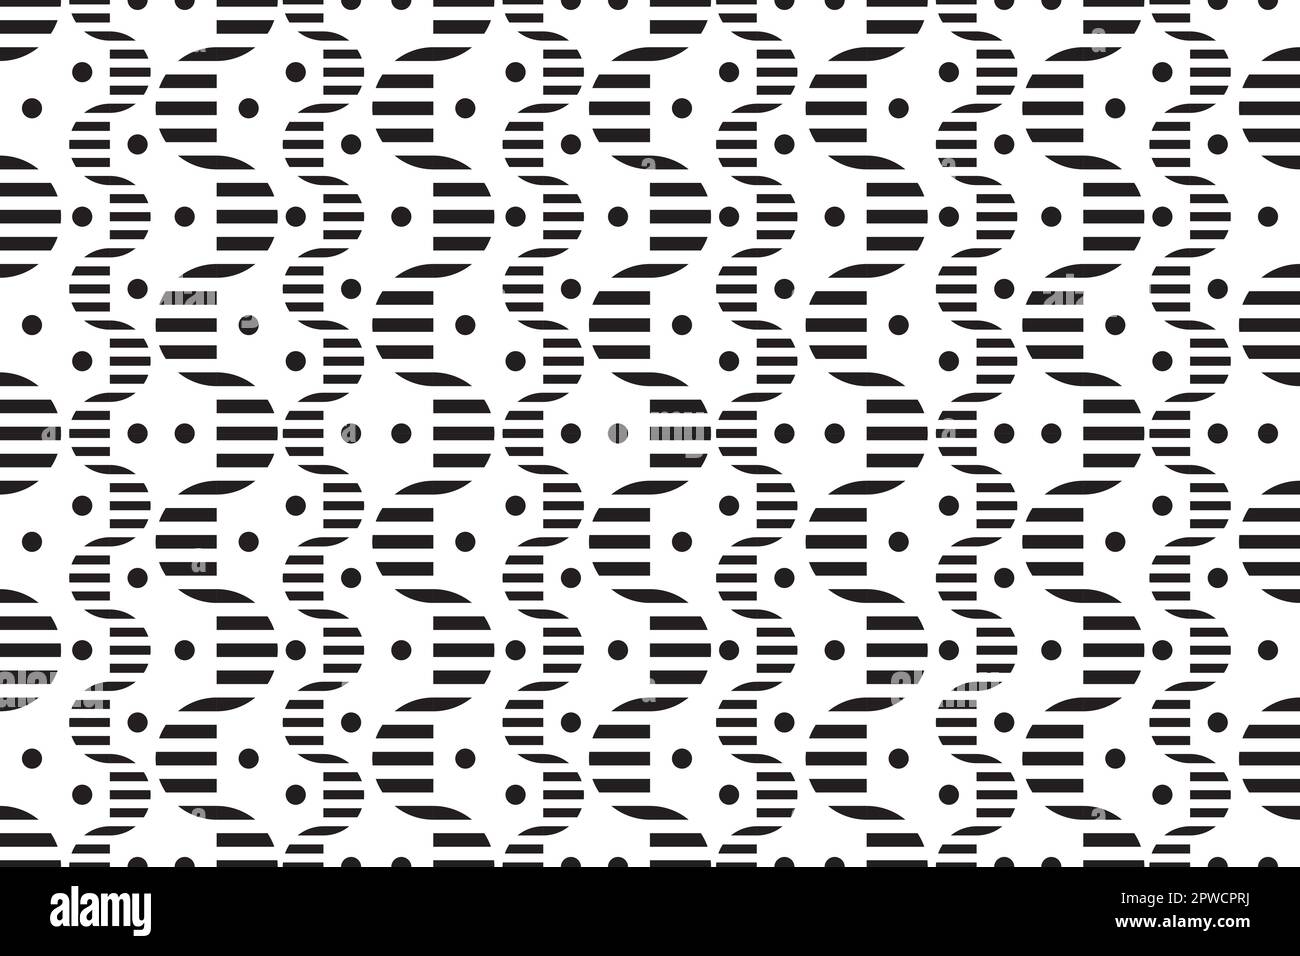 Arrière-plan pop art. Texture de grunge géométrique Bauhaus. Motif Memphis de formes géométriques pour les tissus et les cartes postales. Illustration vectorielle. Taille basse 80s-90s. Arrière-plan abstrait funky. Illustration de Vecteur